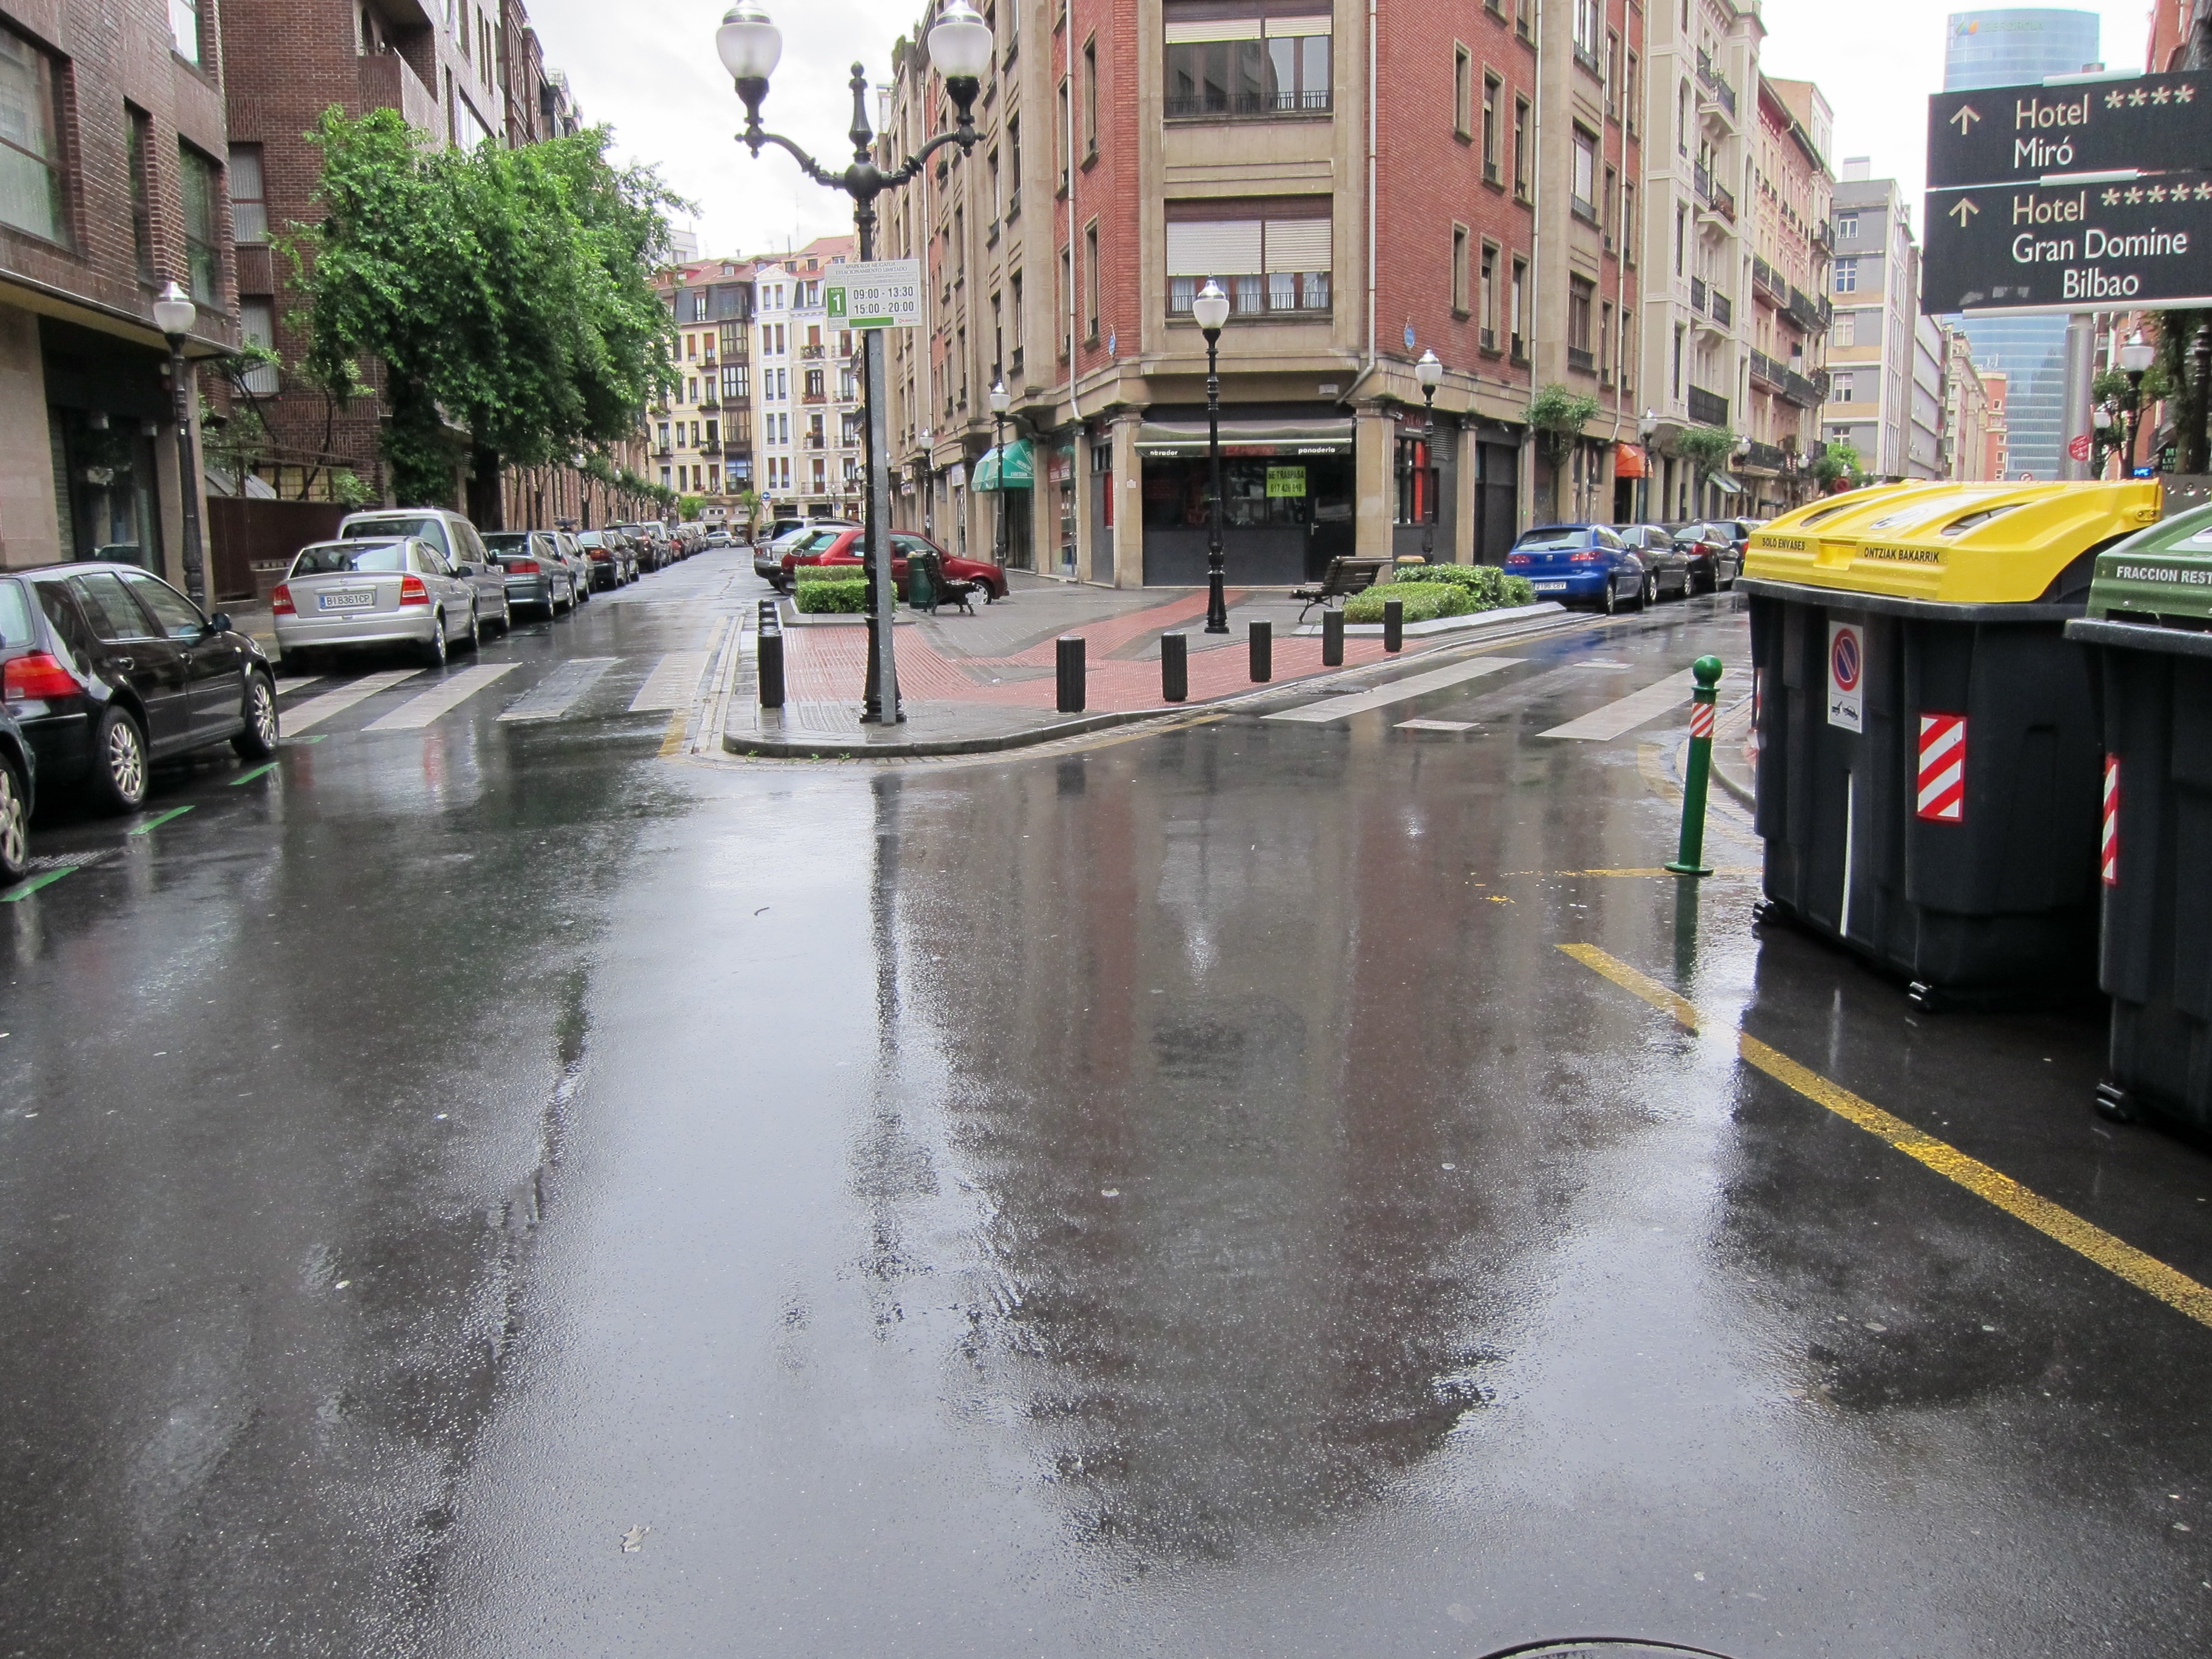 Gobierno vasco activa el aviso amarillo por precipitaciones intensas para el viernes por la tarde y el sábado